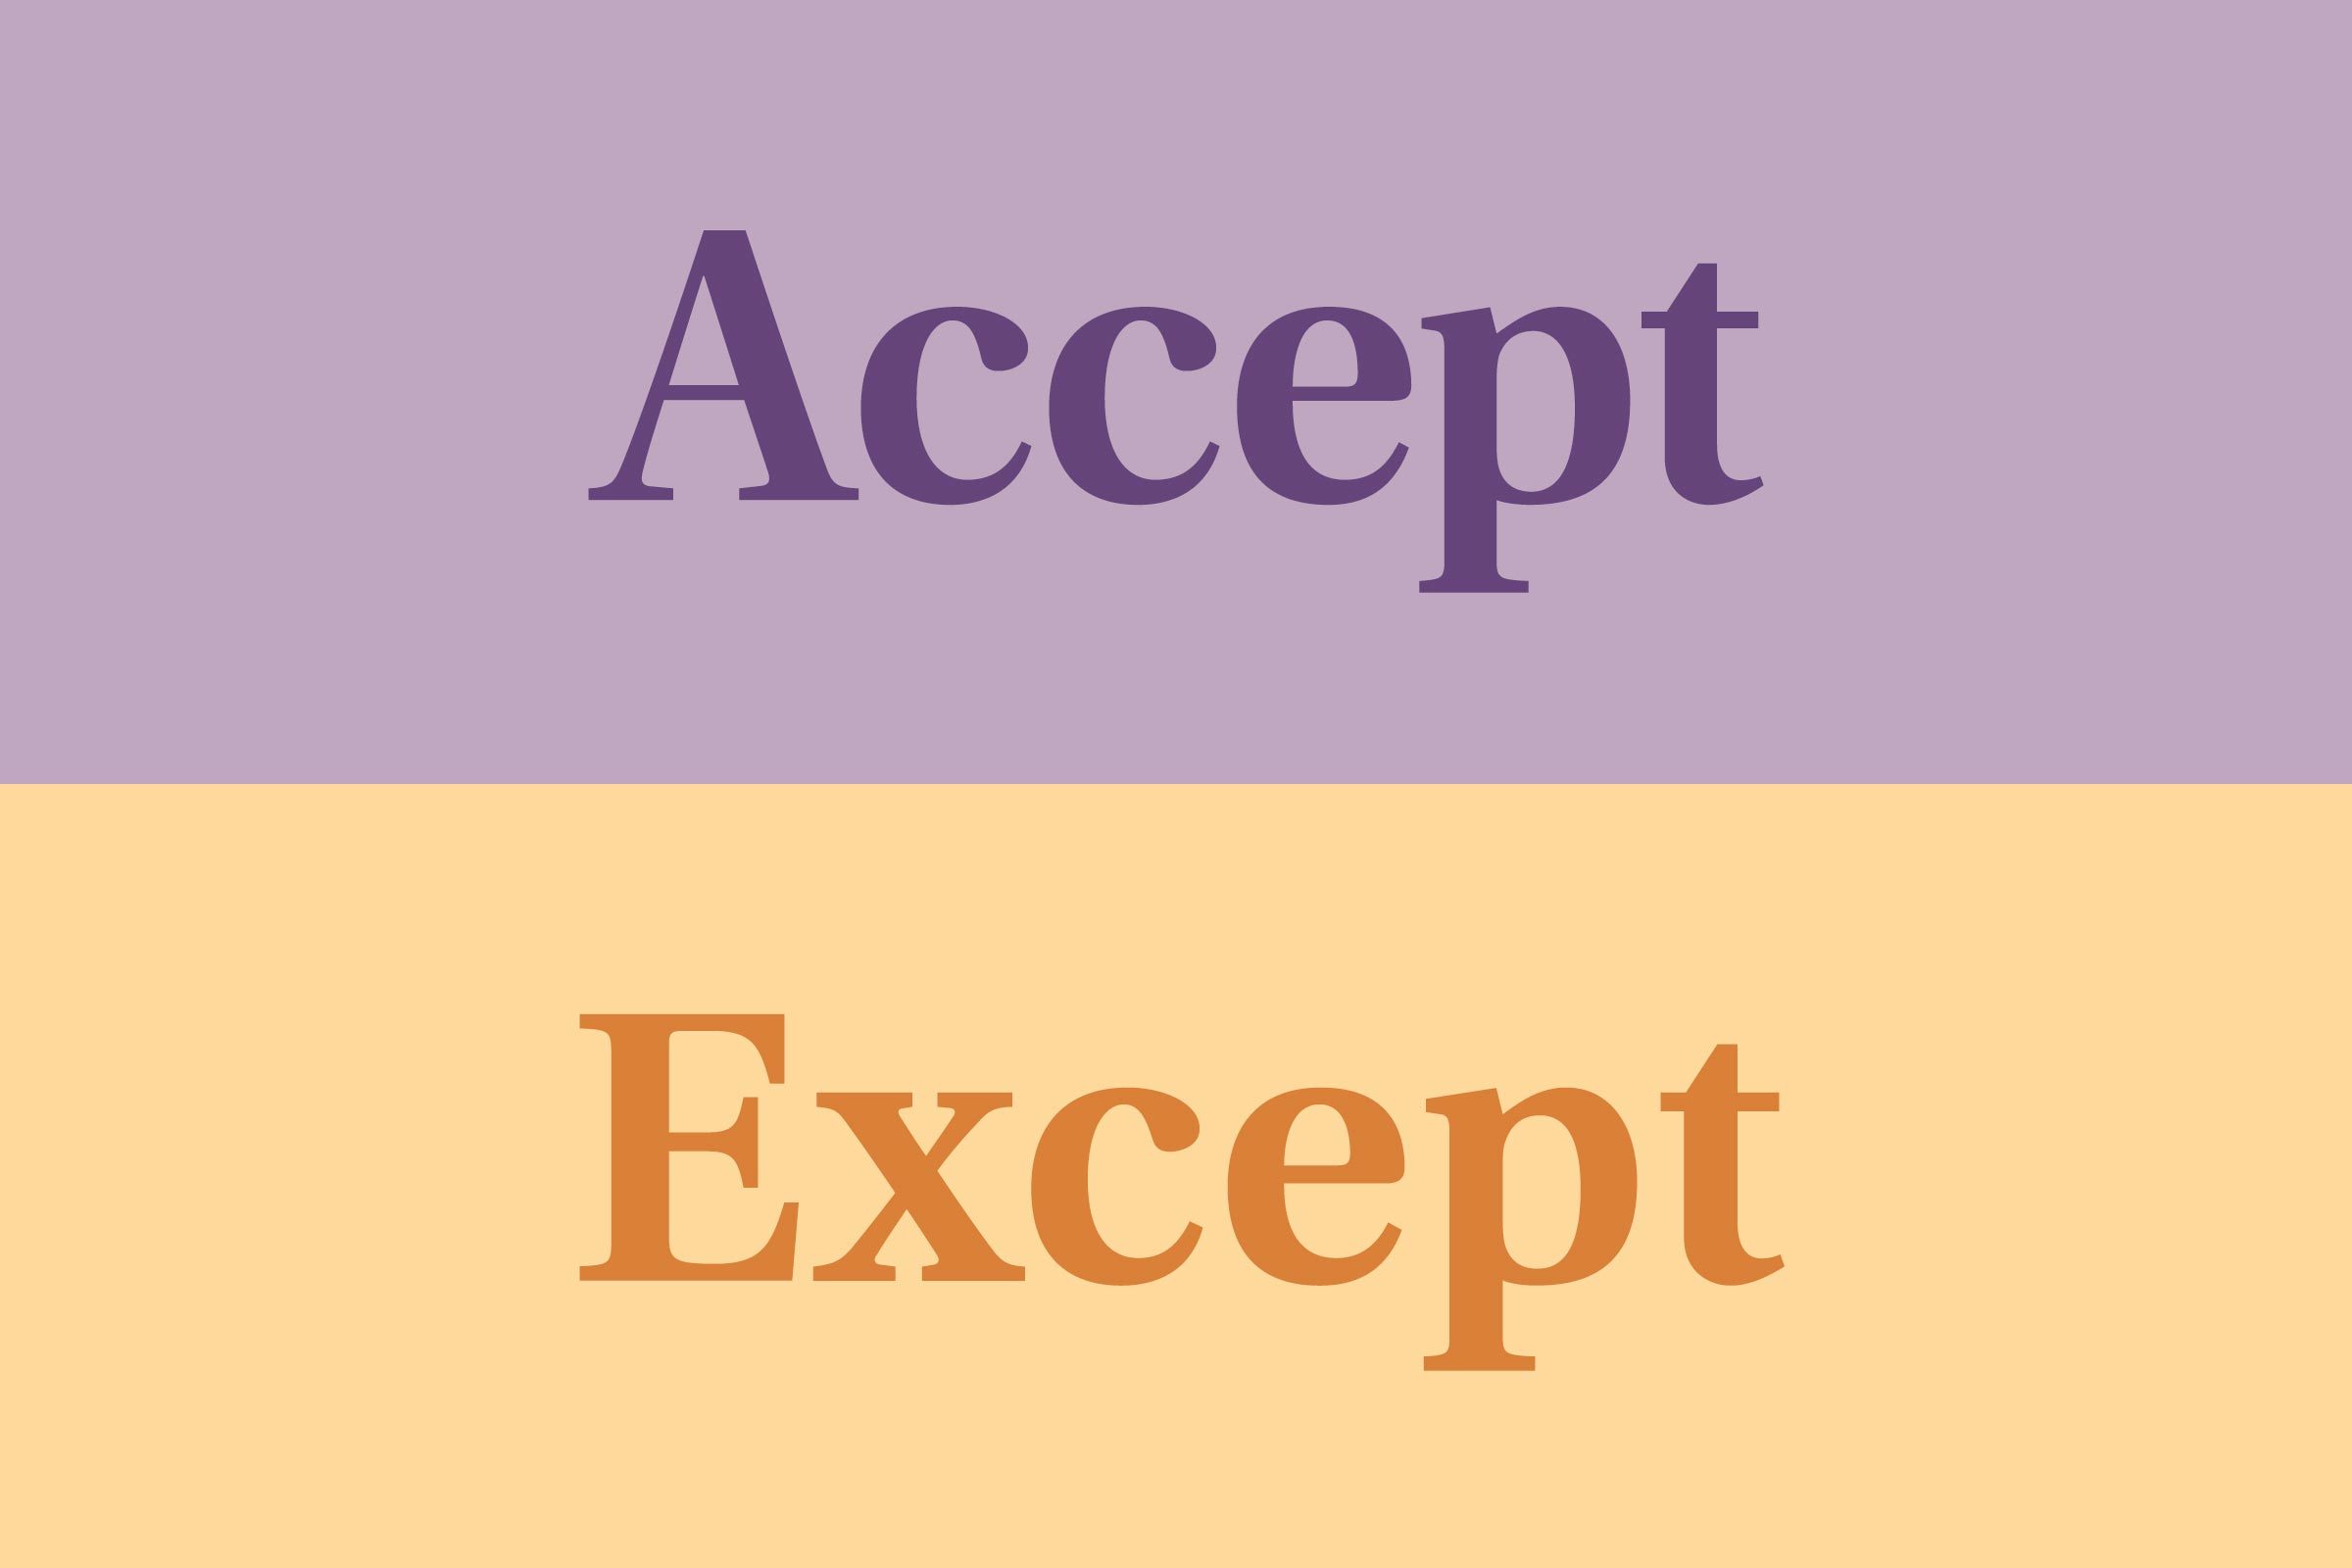 Accept vs. except